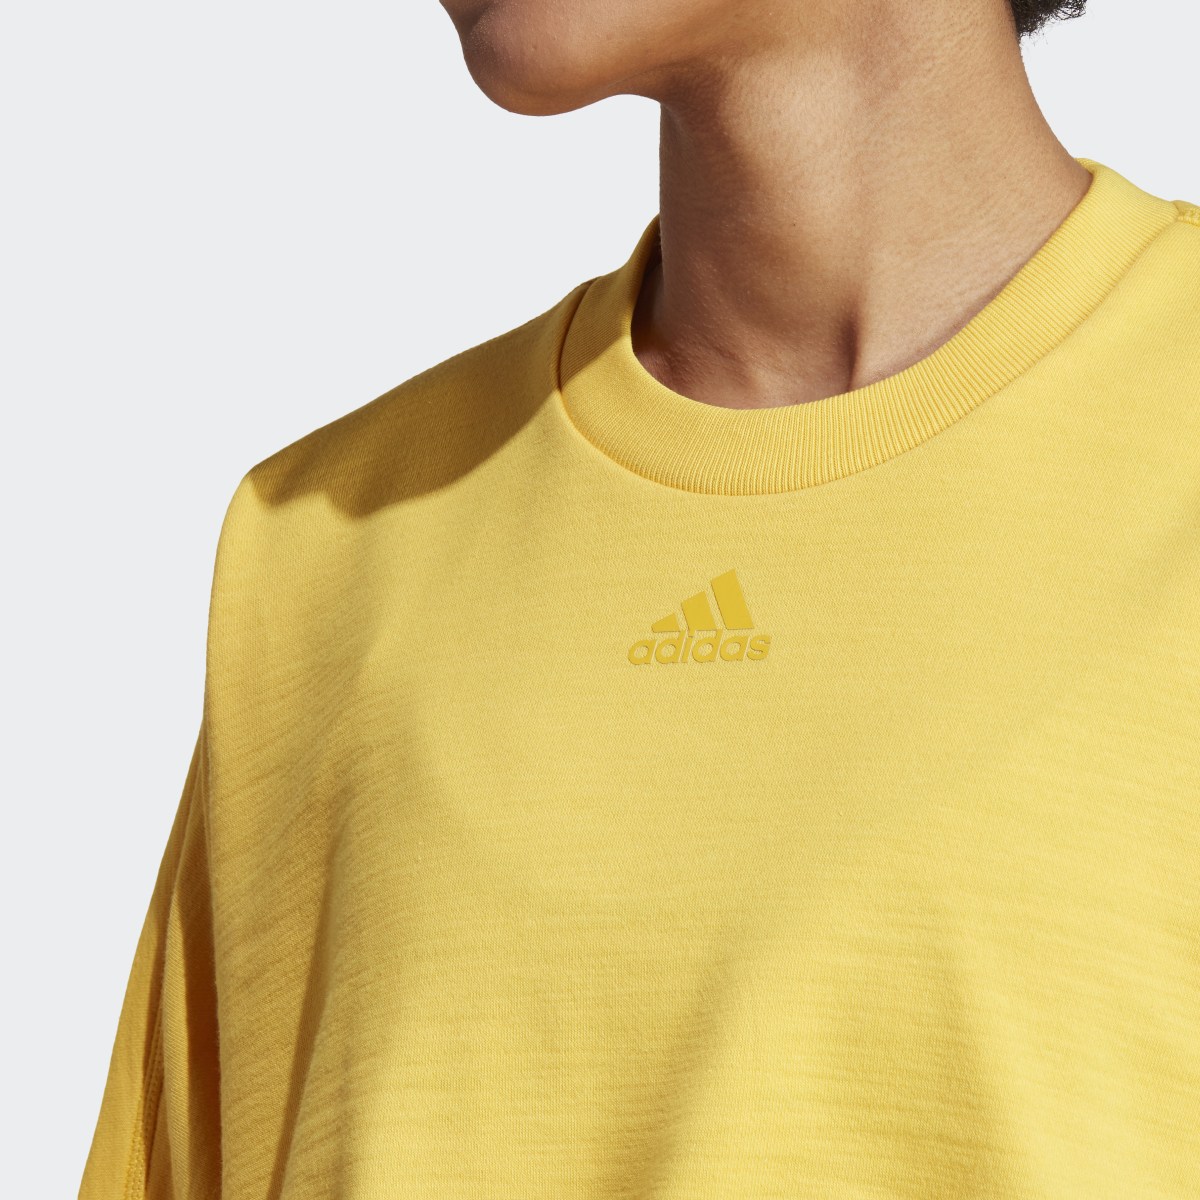 Adidas Dance Crop Versatile Sweatshirt. 6